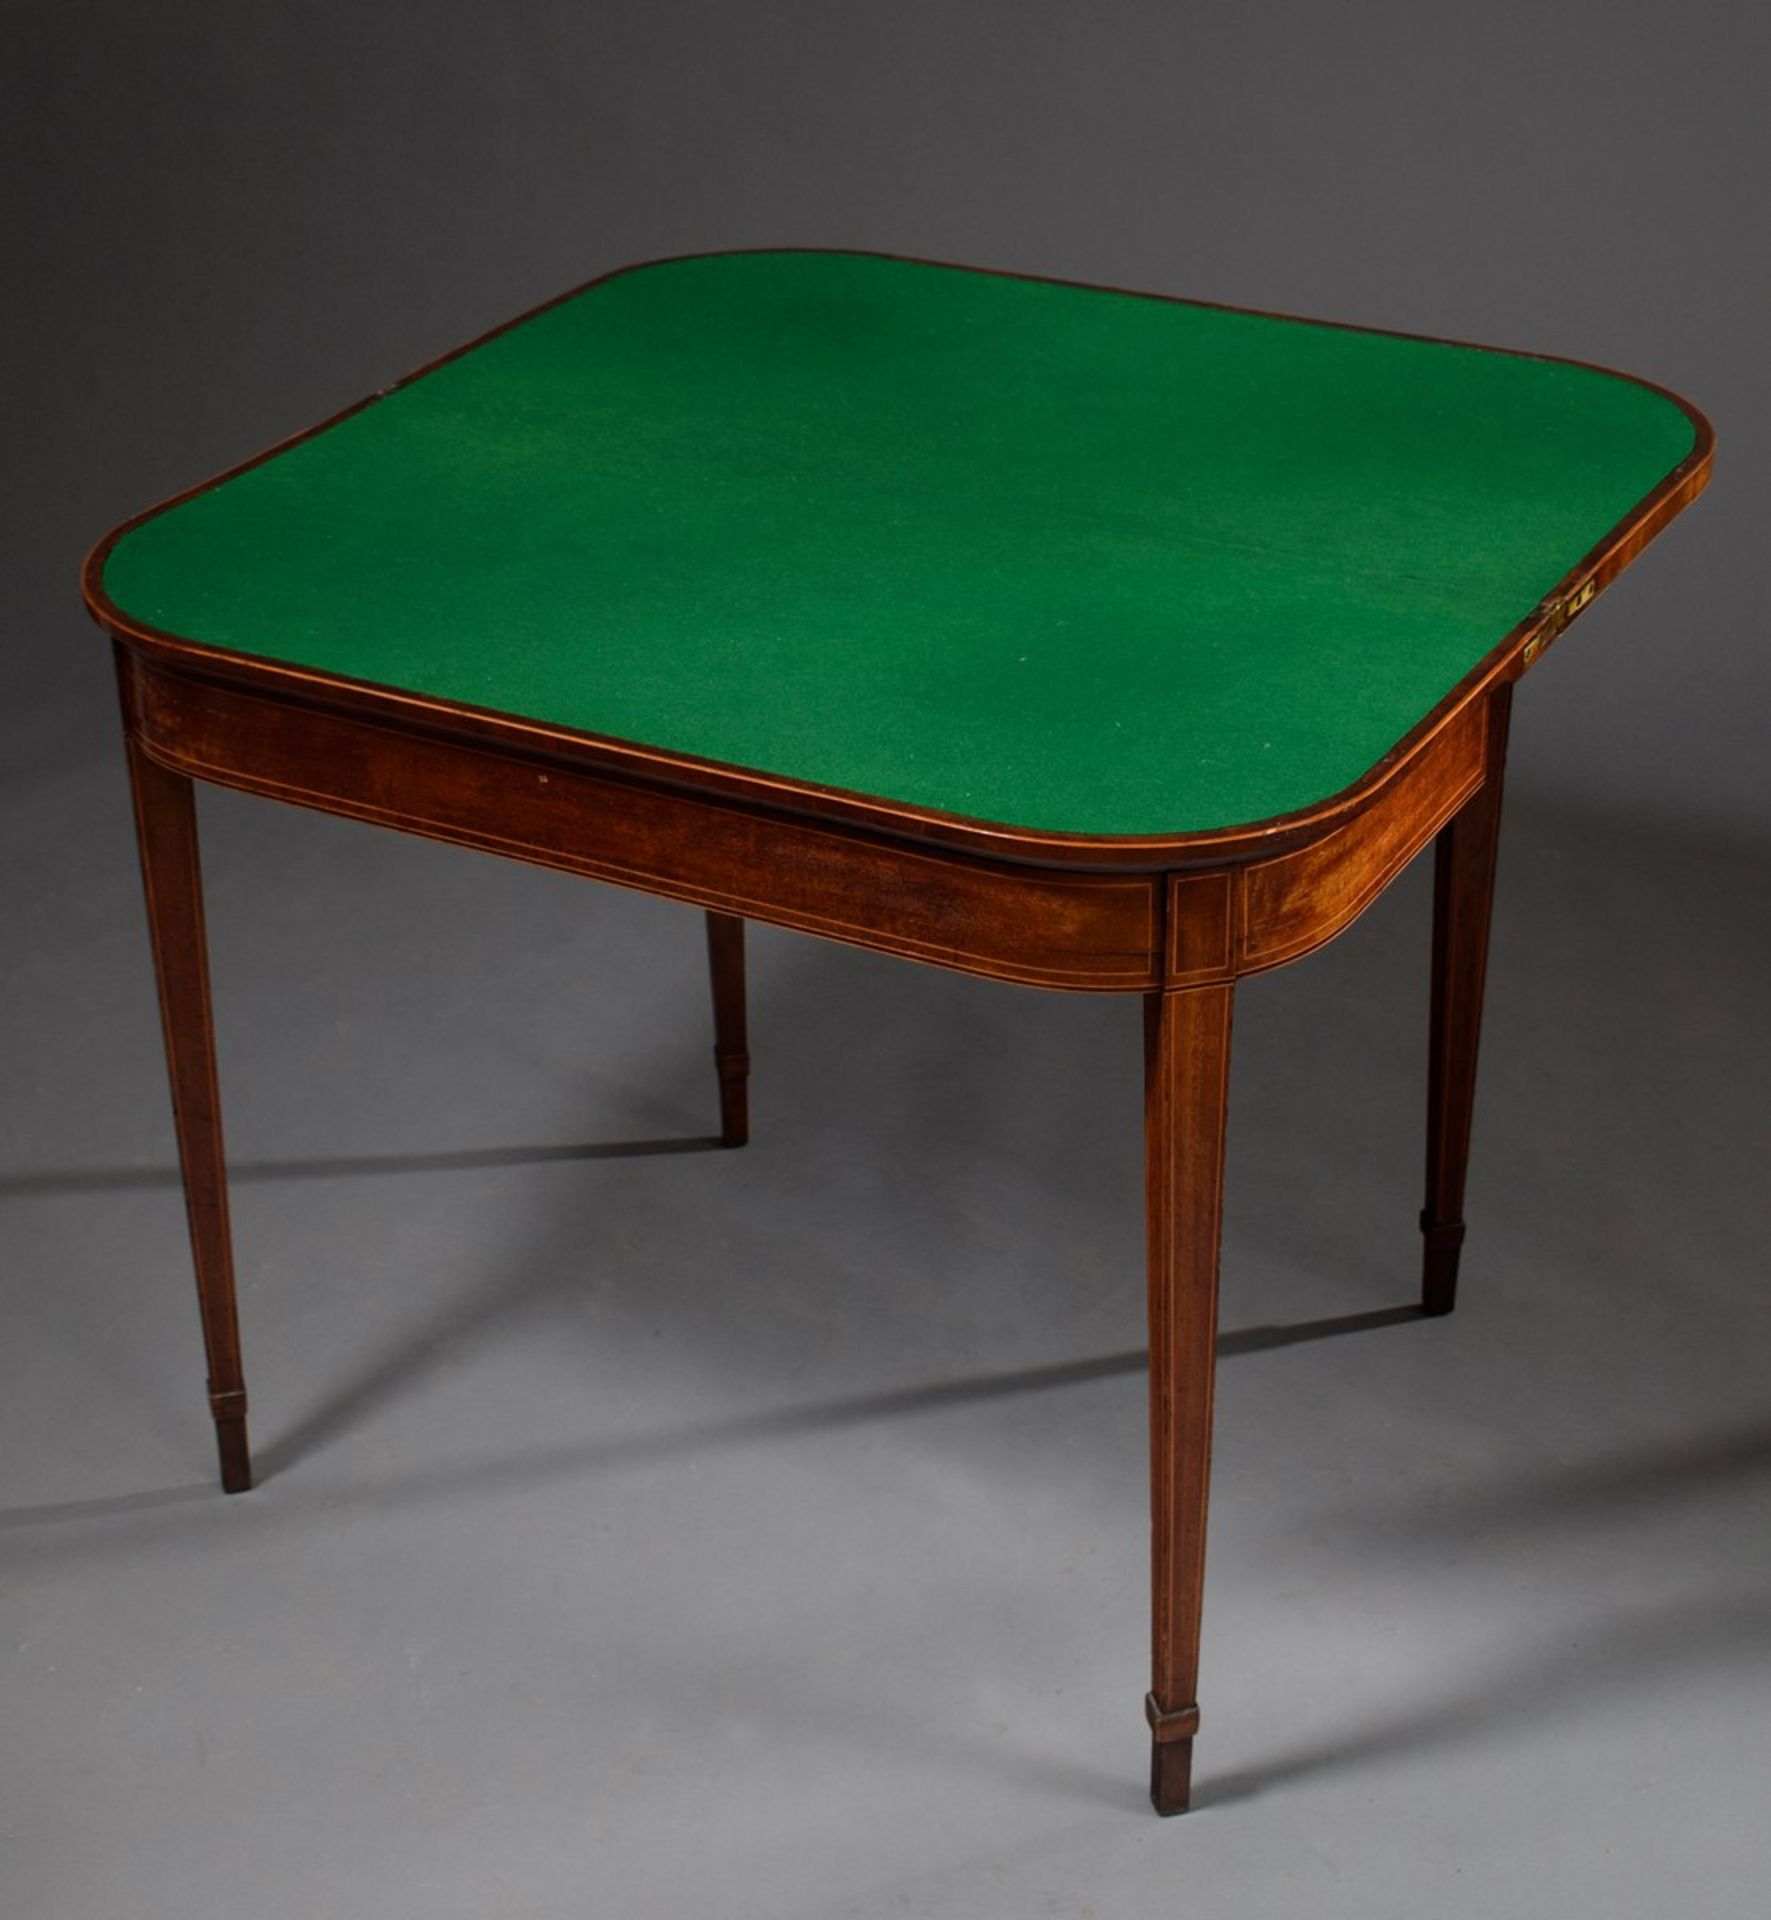 Mahagoni Spieltisch mit abgerundeten Ecken und feiner Fadenintarsien sowie grüner Filzplatte, - Bild 2 aus 2